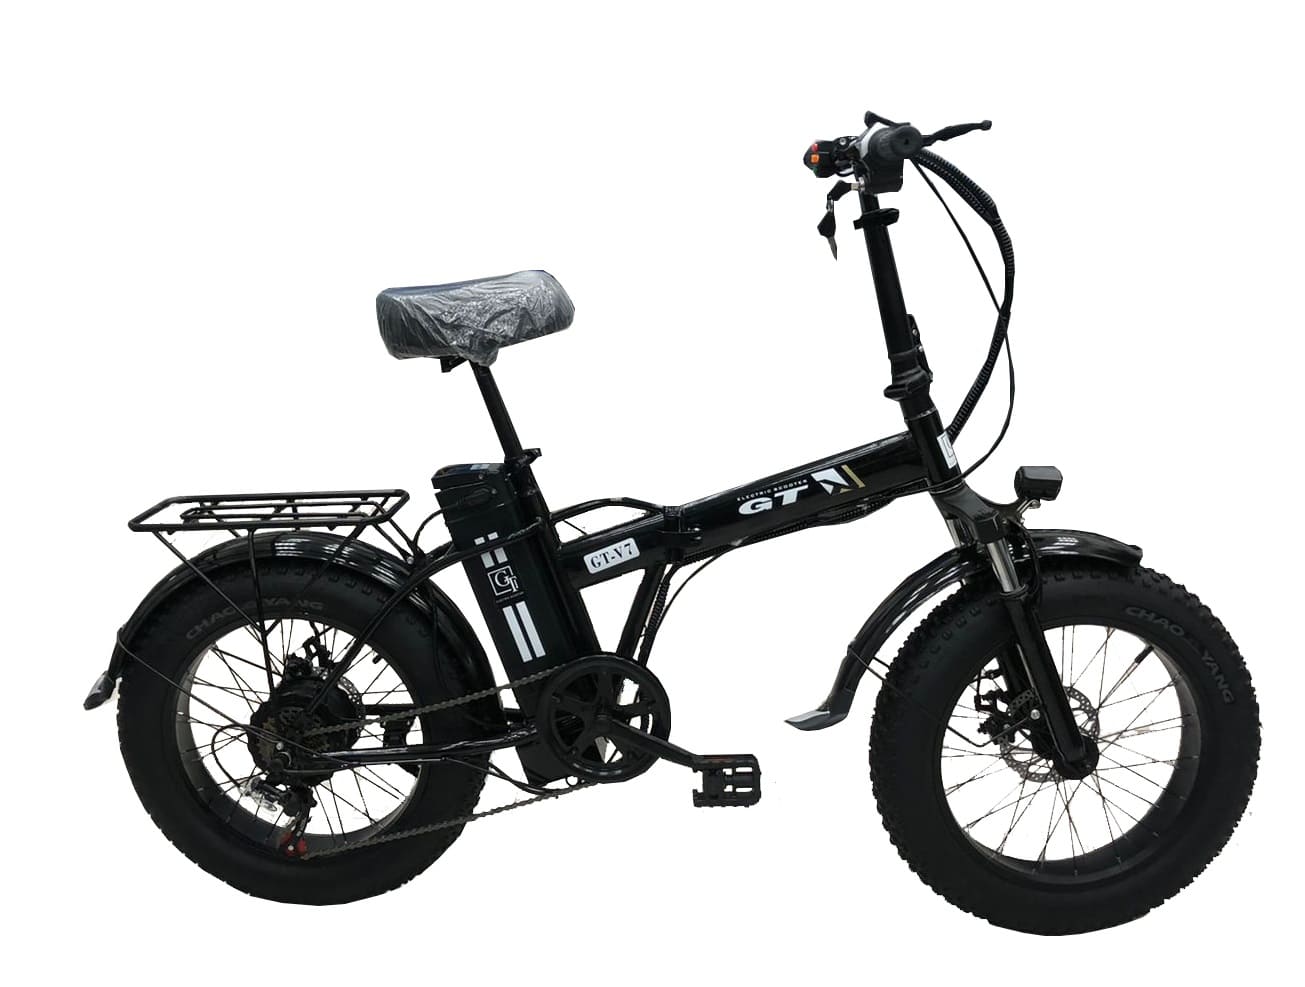 Электровелосипед Xchariot k1. Gt v6 электровелосипед. Электровелосипед Hoverbot CB-6 Urban. Электровелосипед Hiper engine MTB s1.